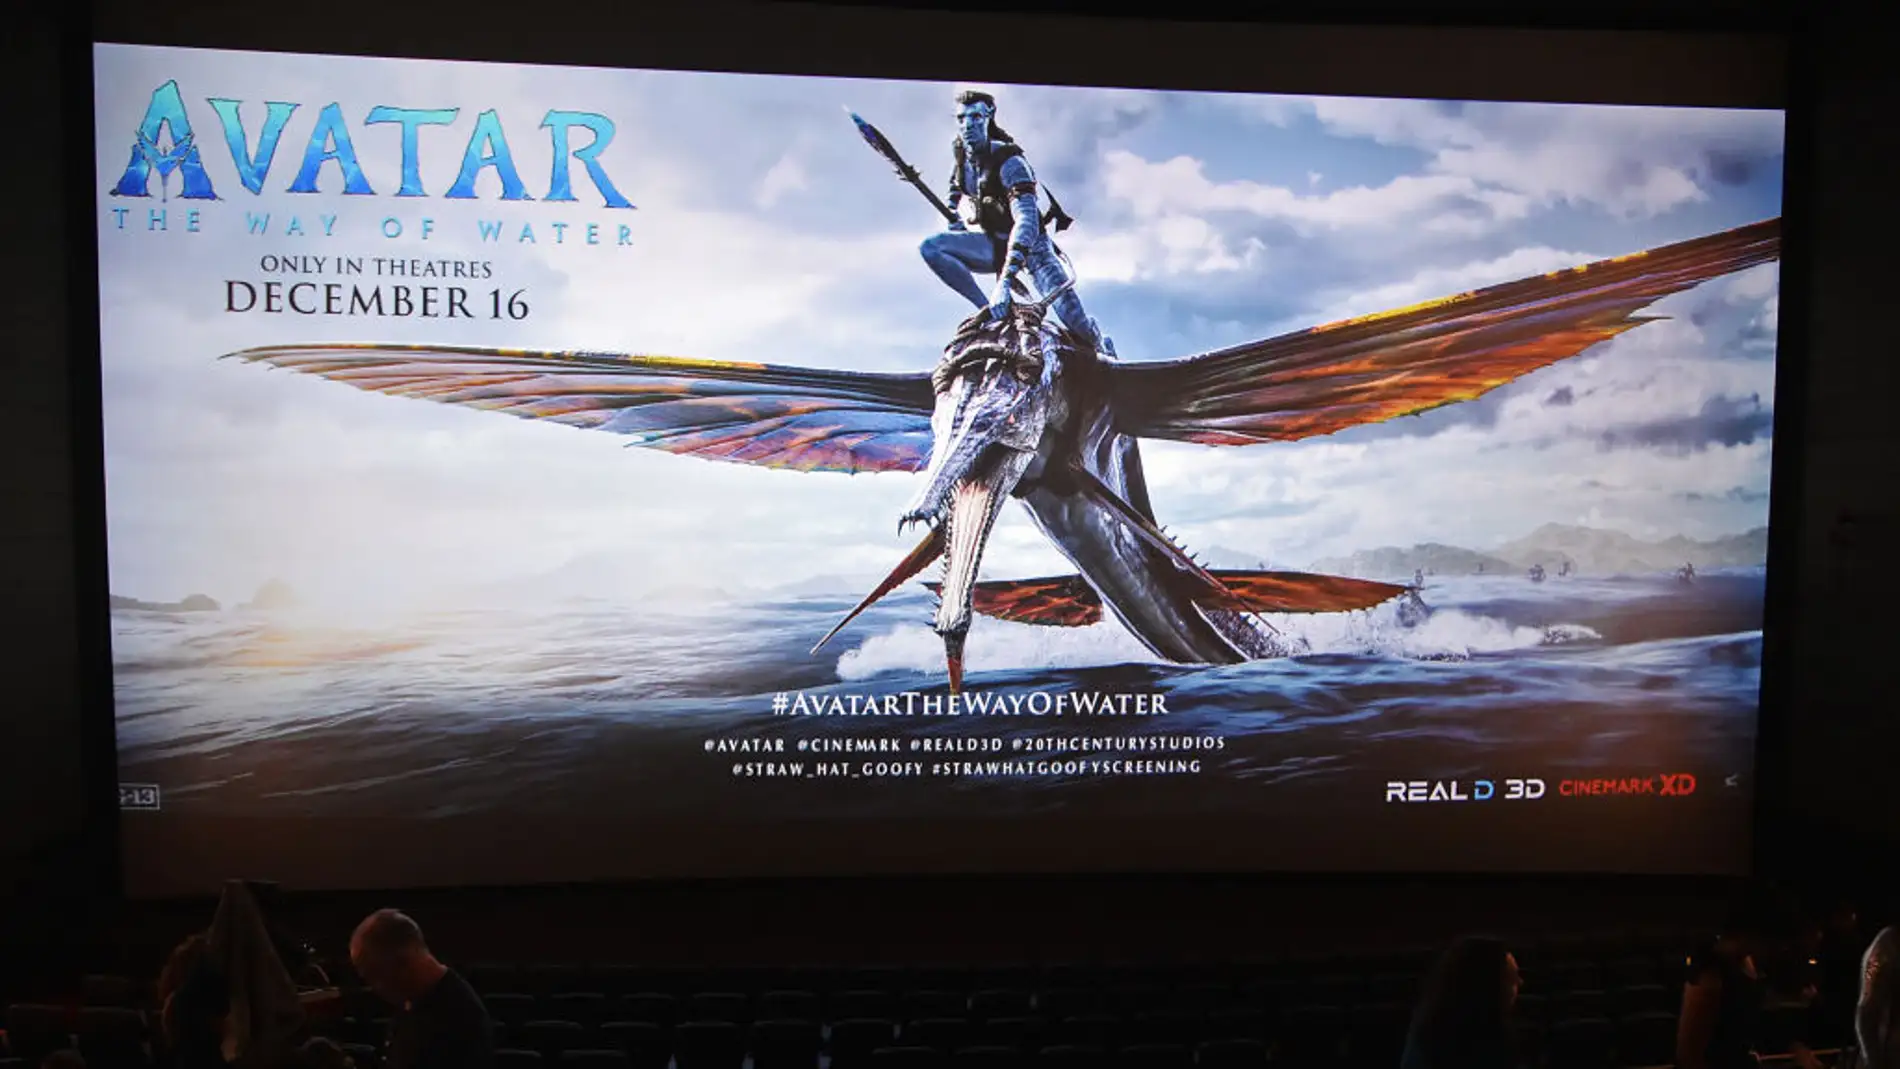 Proyección de Avatar 2 en un cine 